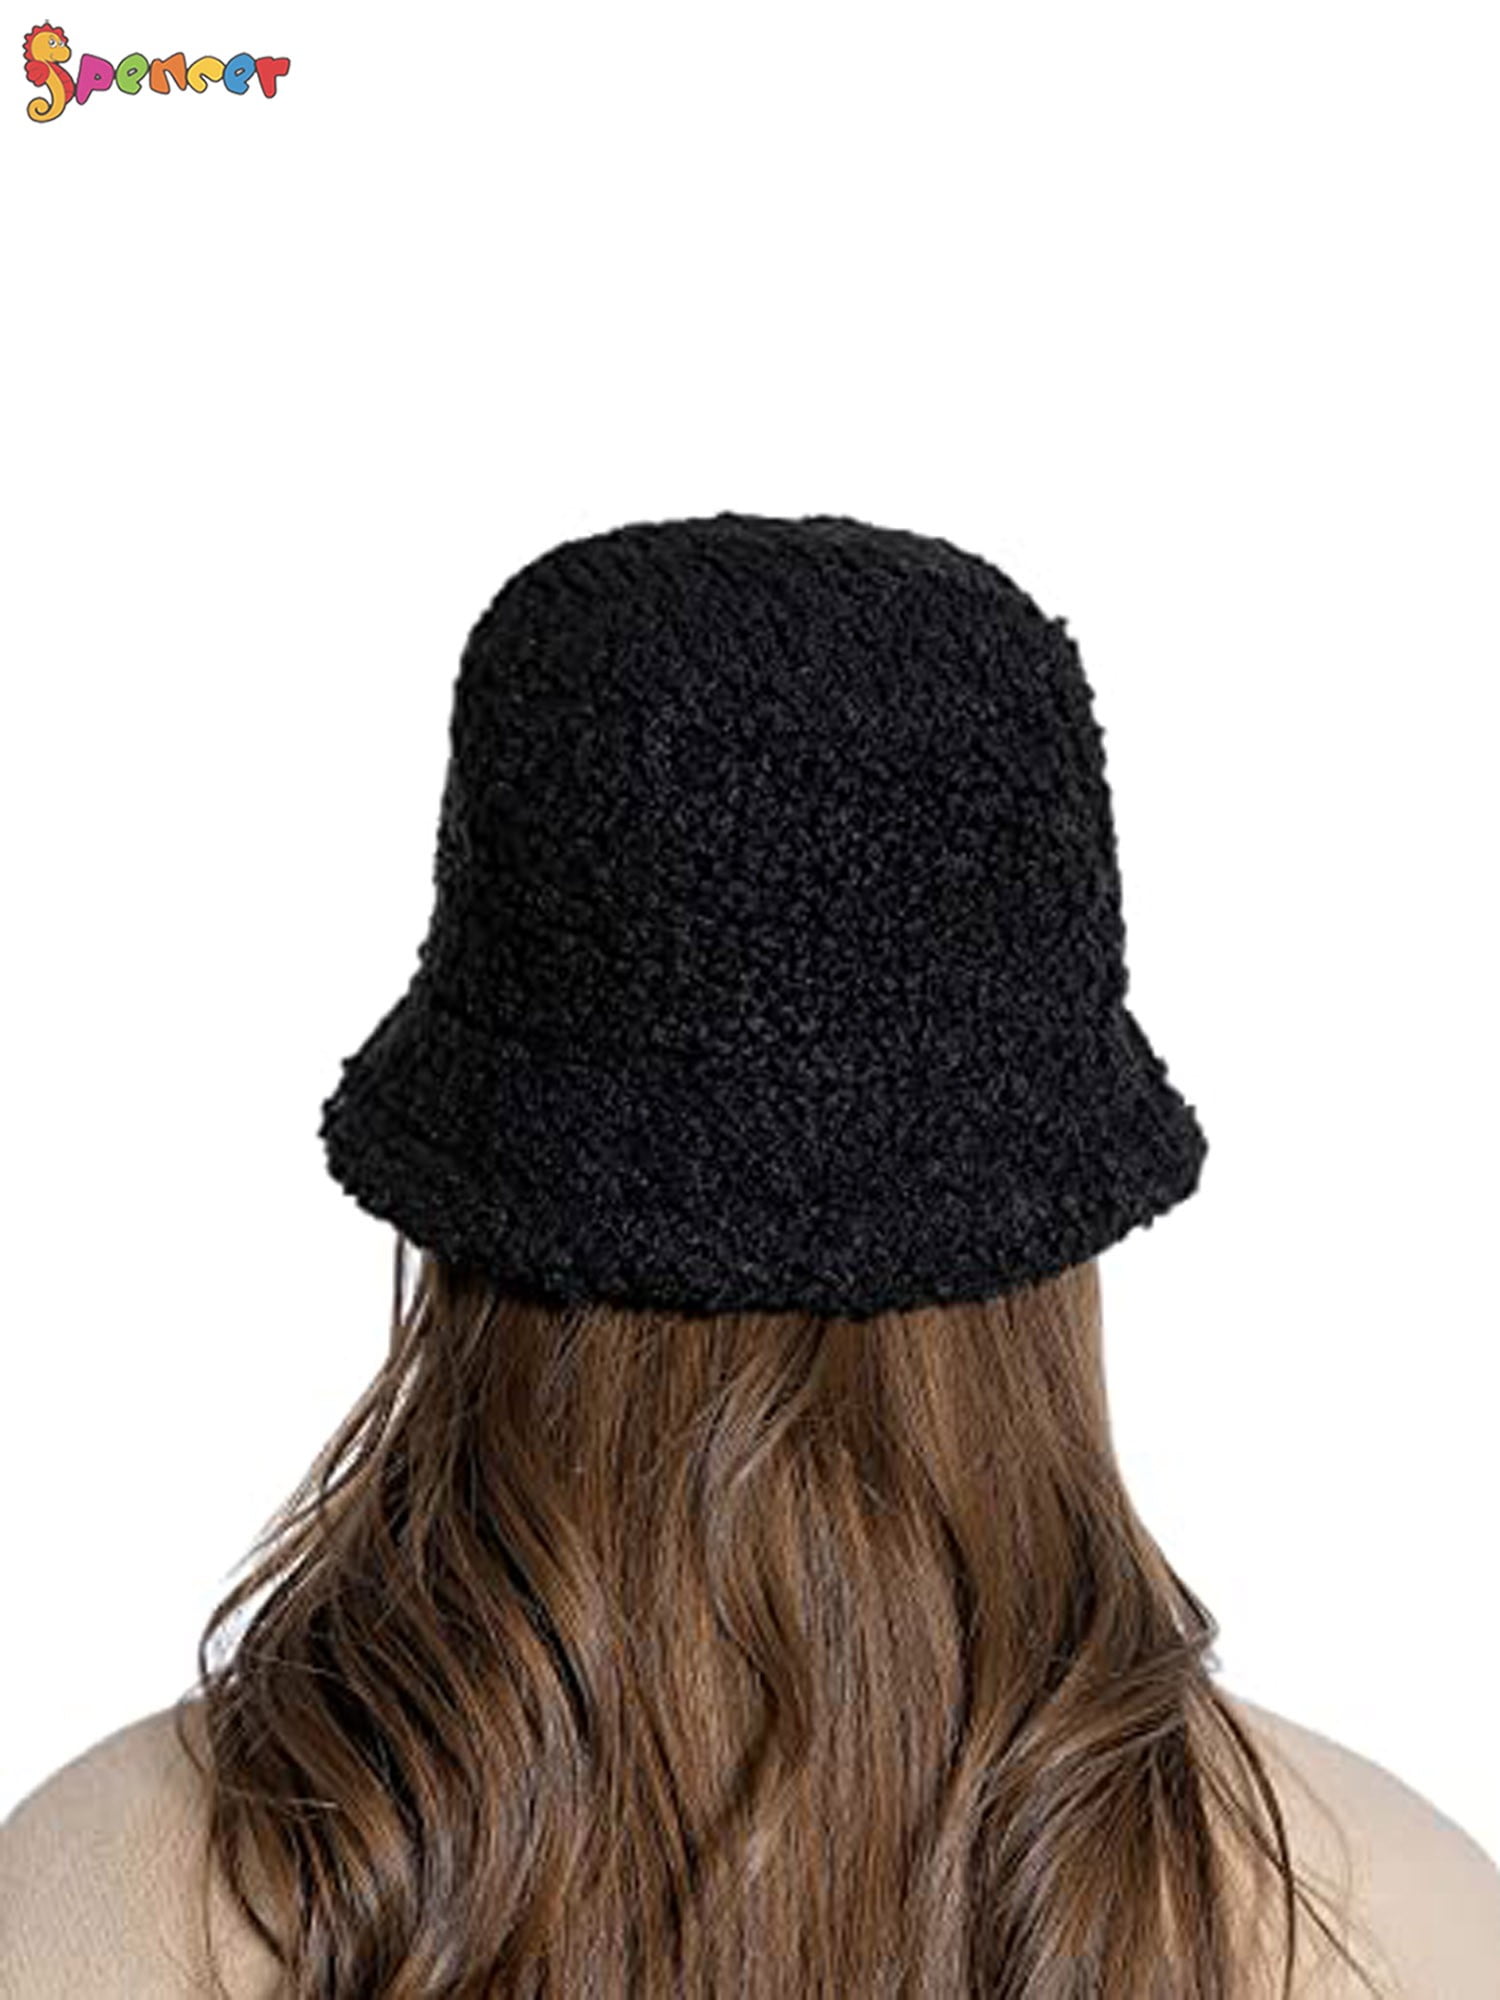 Spencer Winter Bucket Hat for Women Men Warm Cloche Hats Vintage Faux Fur Fisherman Cap White, Women's, Size: One Size